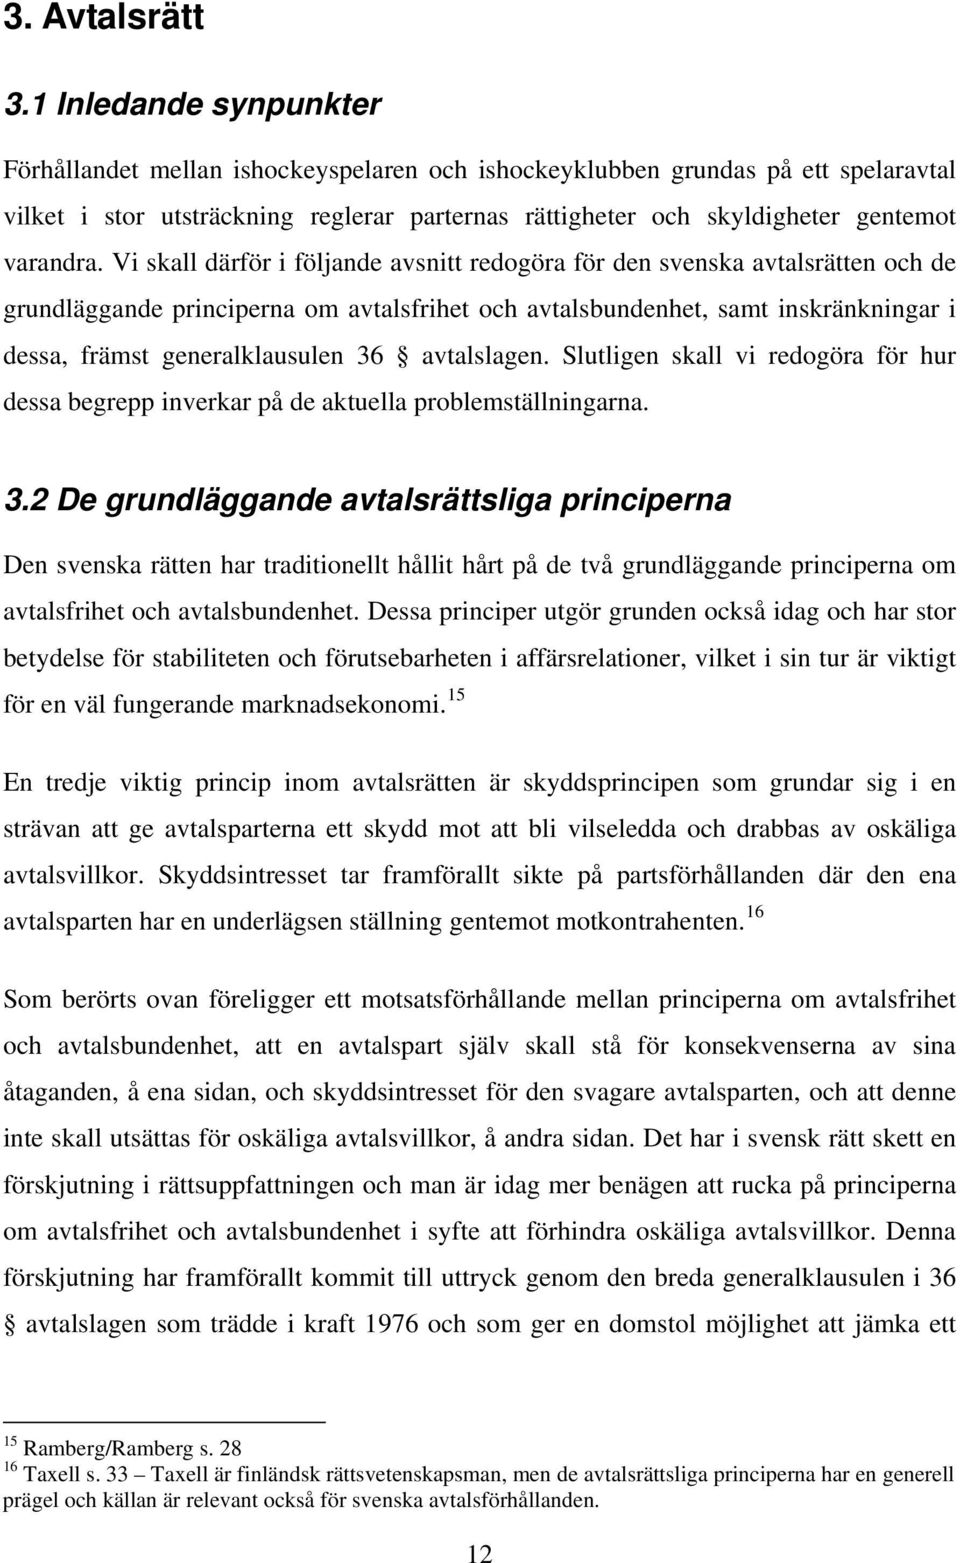 Vi skall därför i följande avsnitt redogöra för den svenska avtalsrätten och de grundläggande principerna om avtalsfrihet och avtalsbundenhet, samt inskränkningar i dessa, främst generalklausulen 36